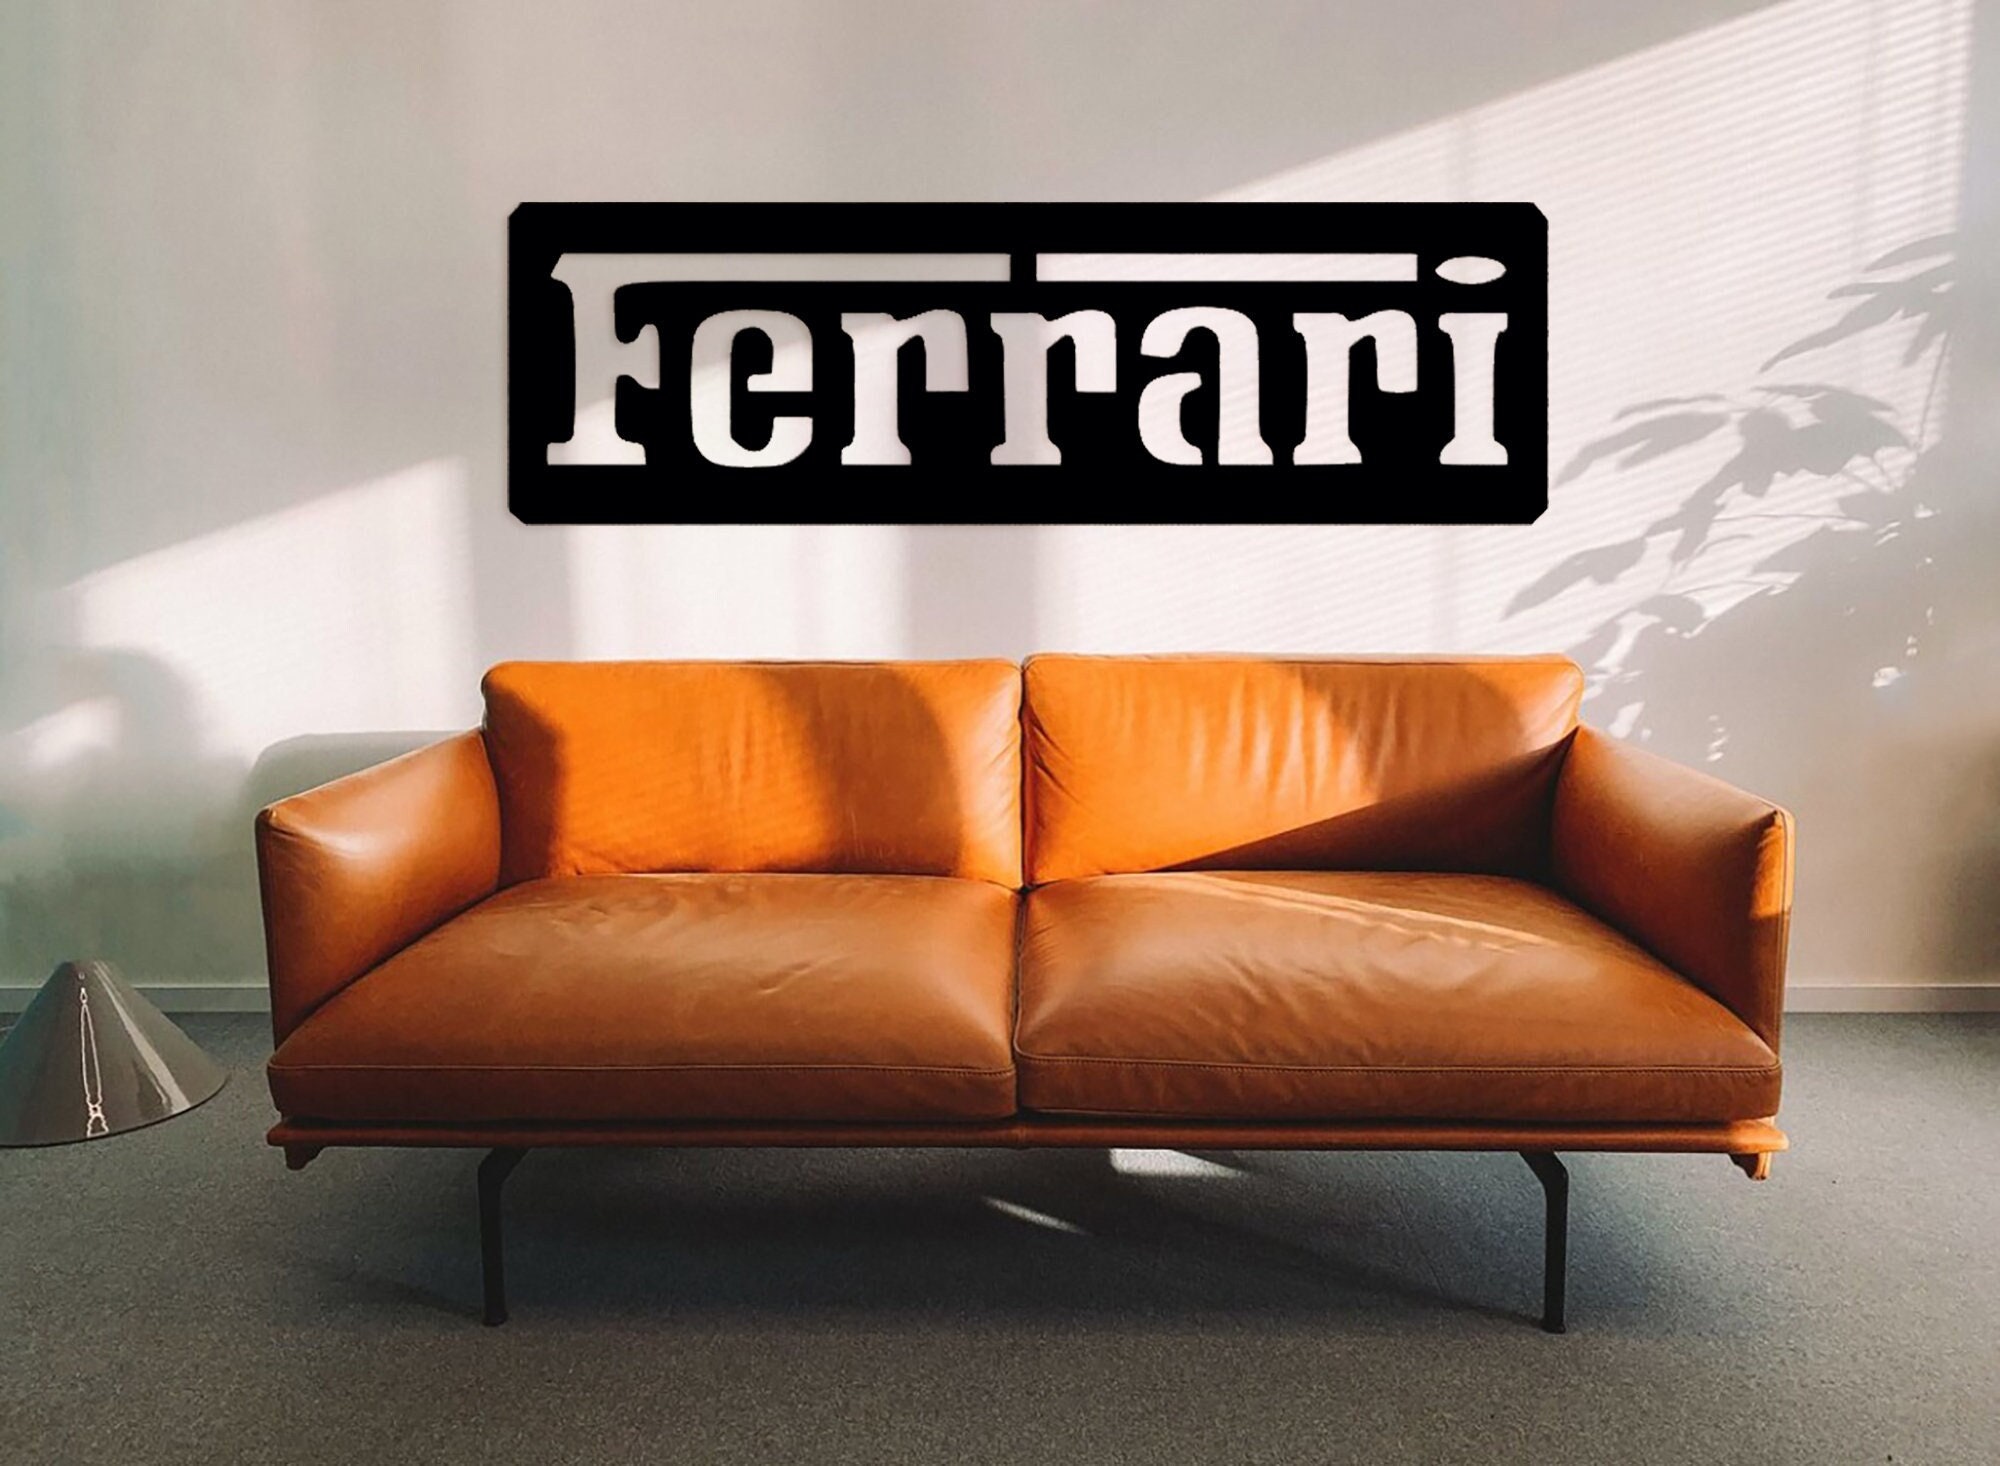 Ferrari sign wood for sale  